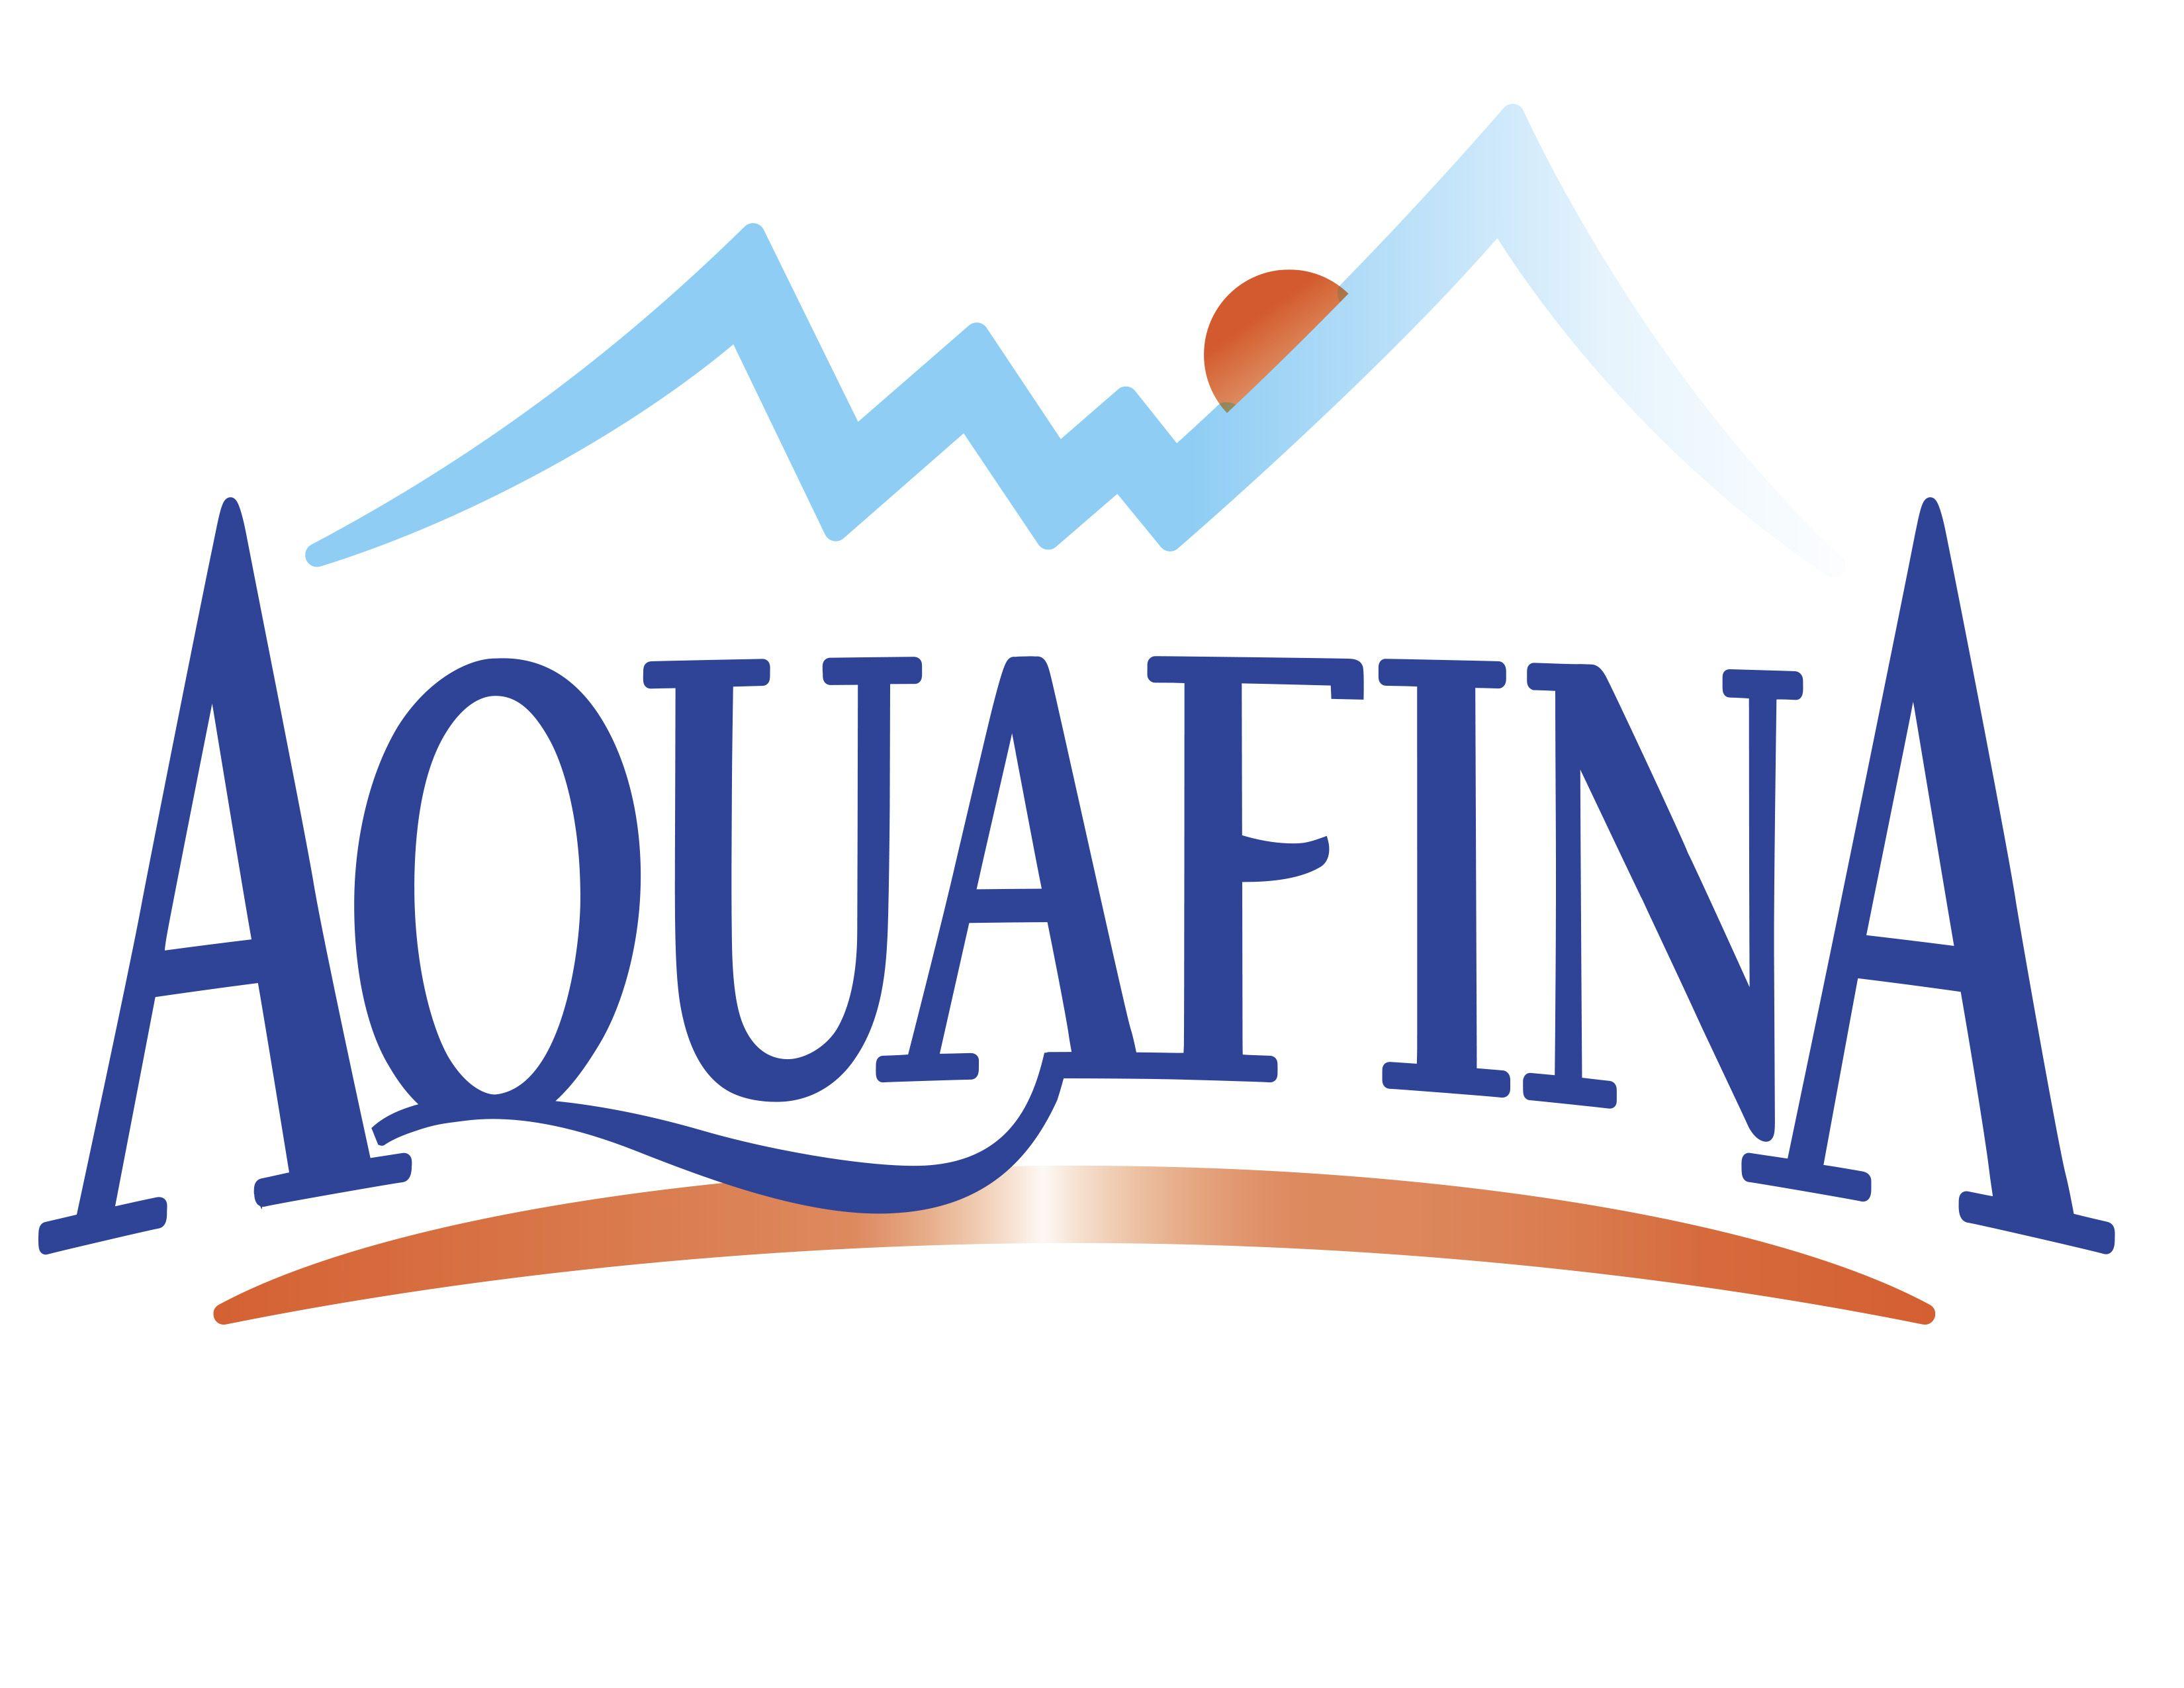 Aquafina Logo - Aquafina Logo PNG Transparent Aquafina Logo.PNG Images. | PlusPNG